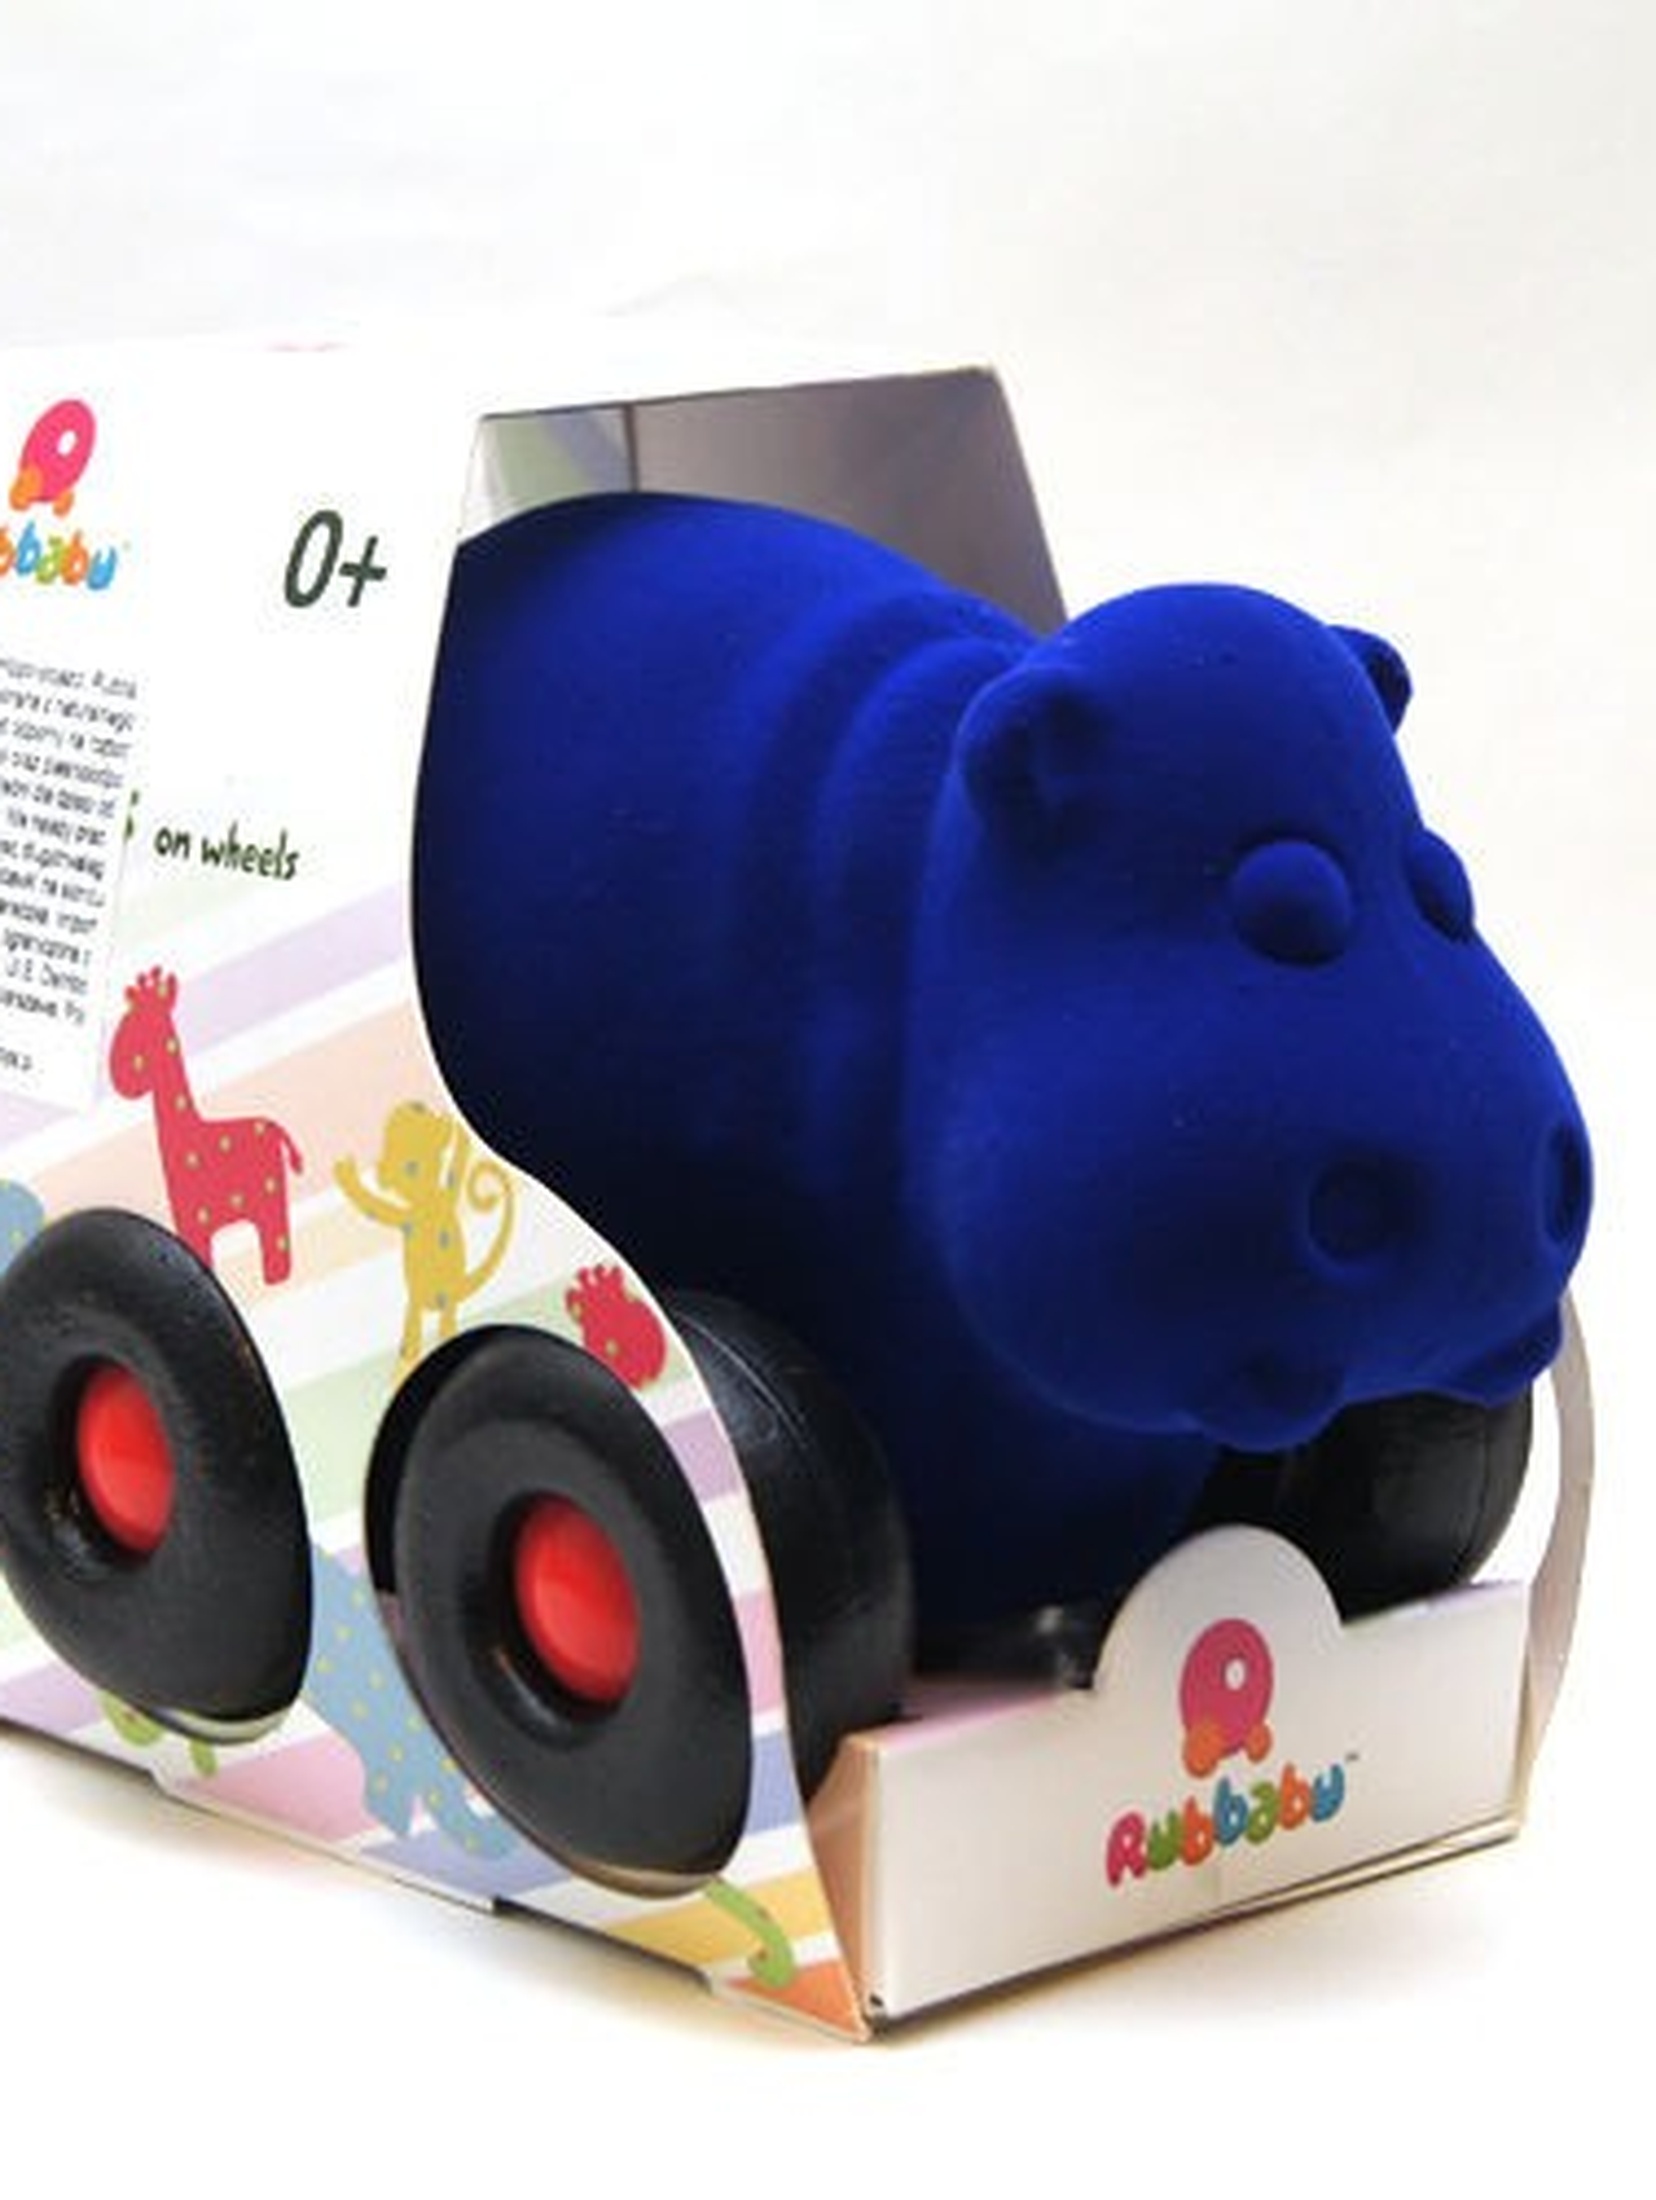 RUBBABU Hippo - pojazd kolor niebieski